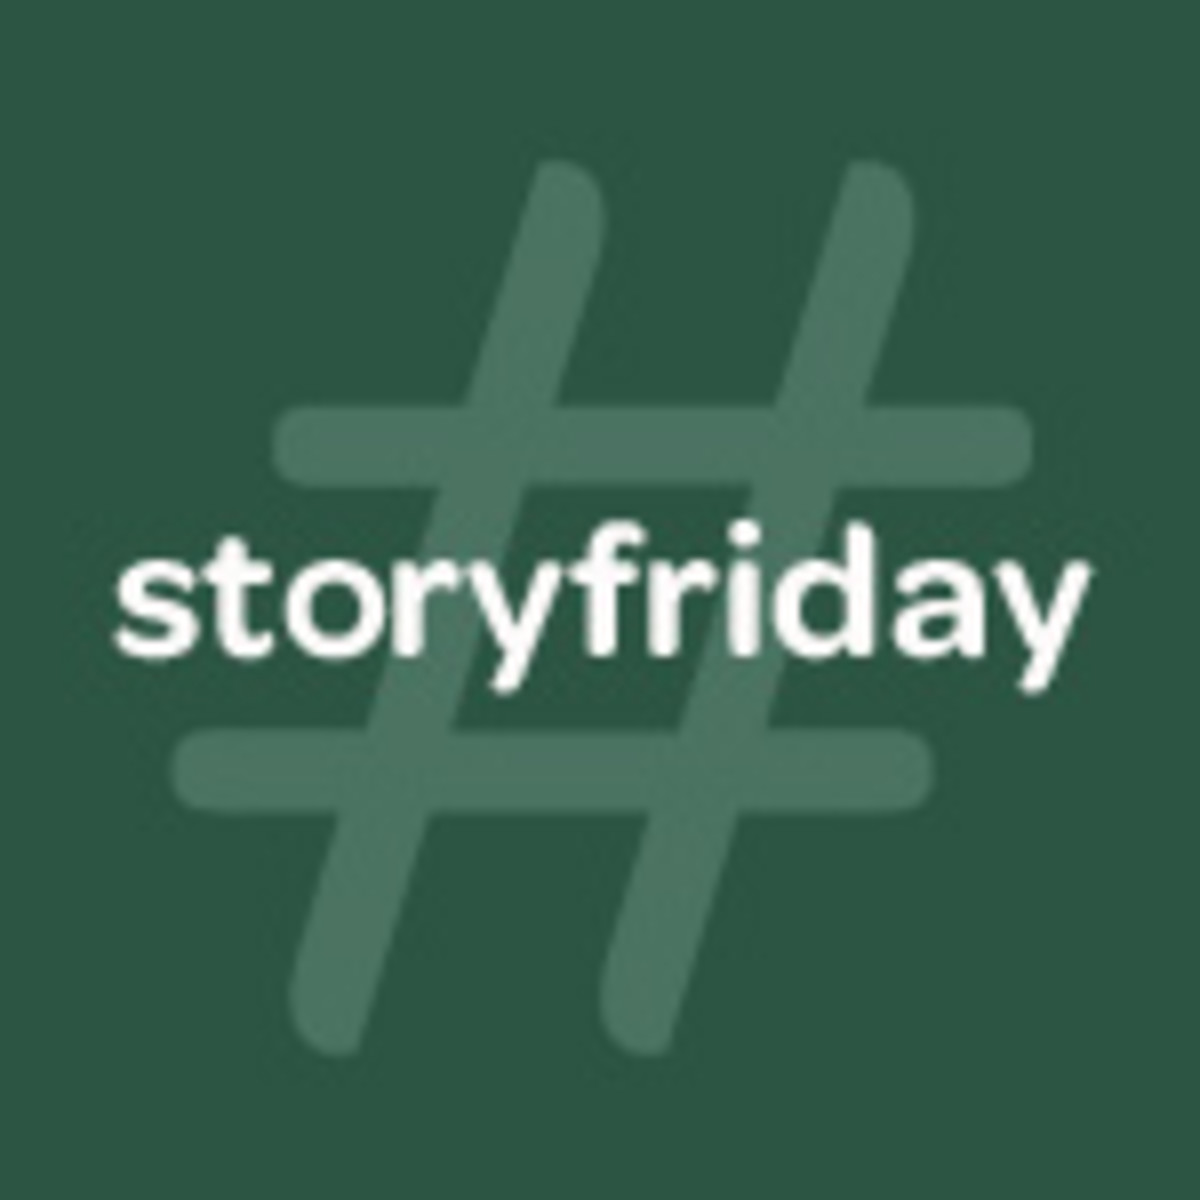 StoryFriday-green